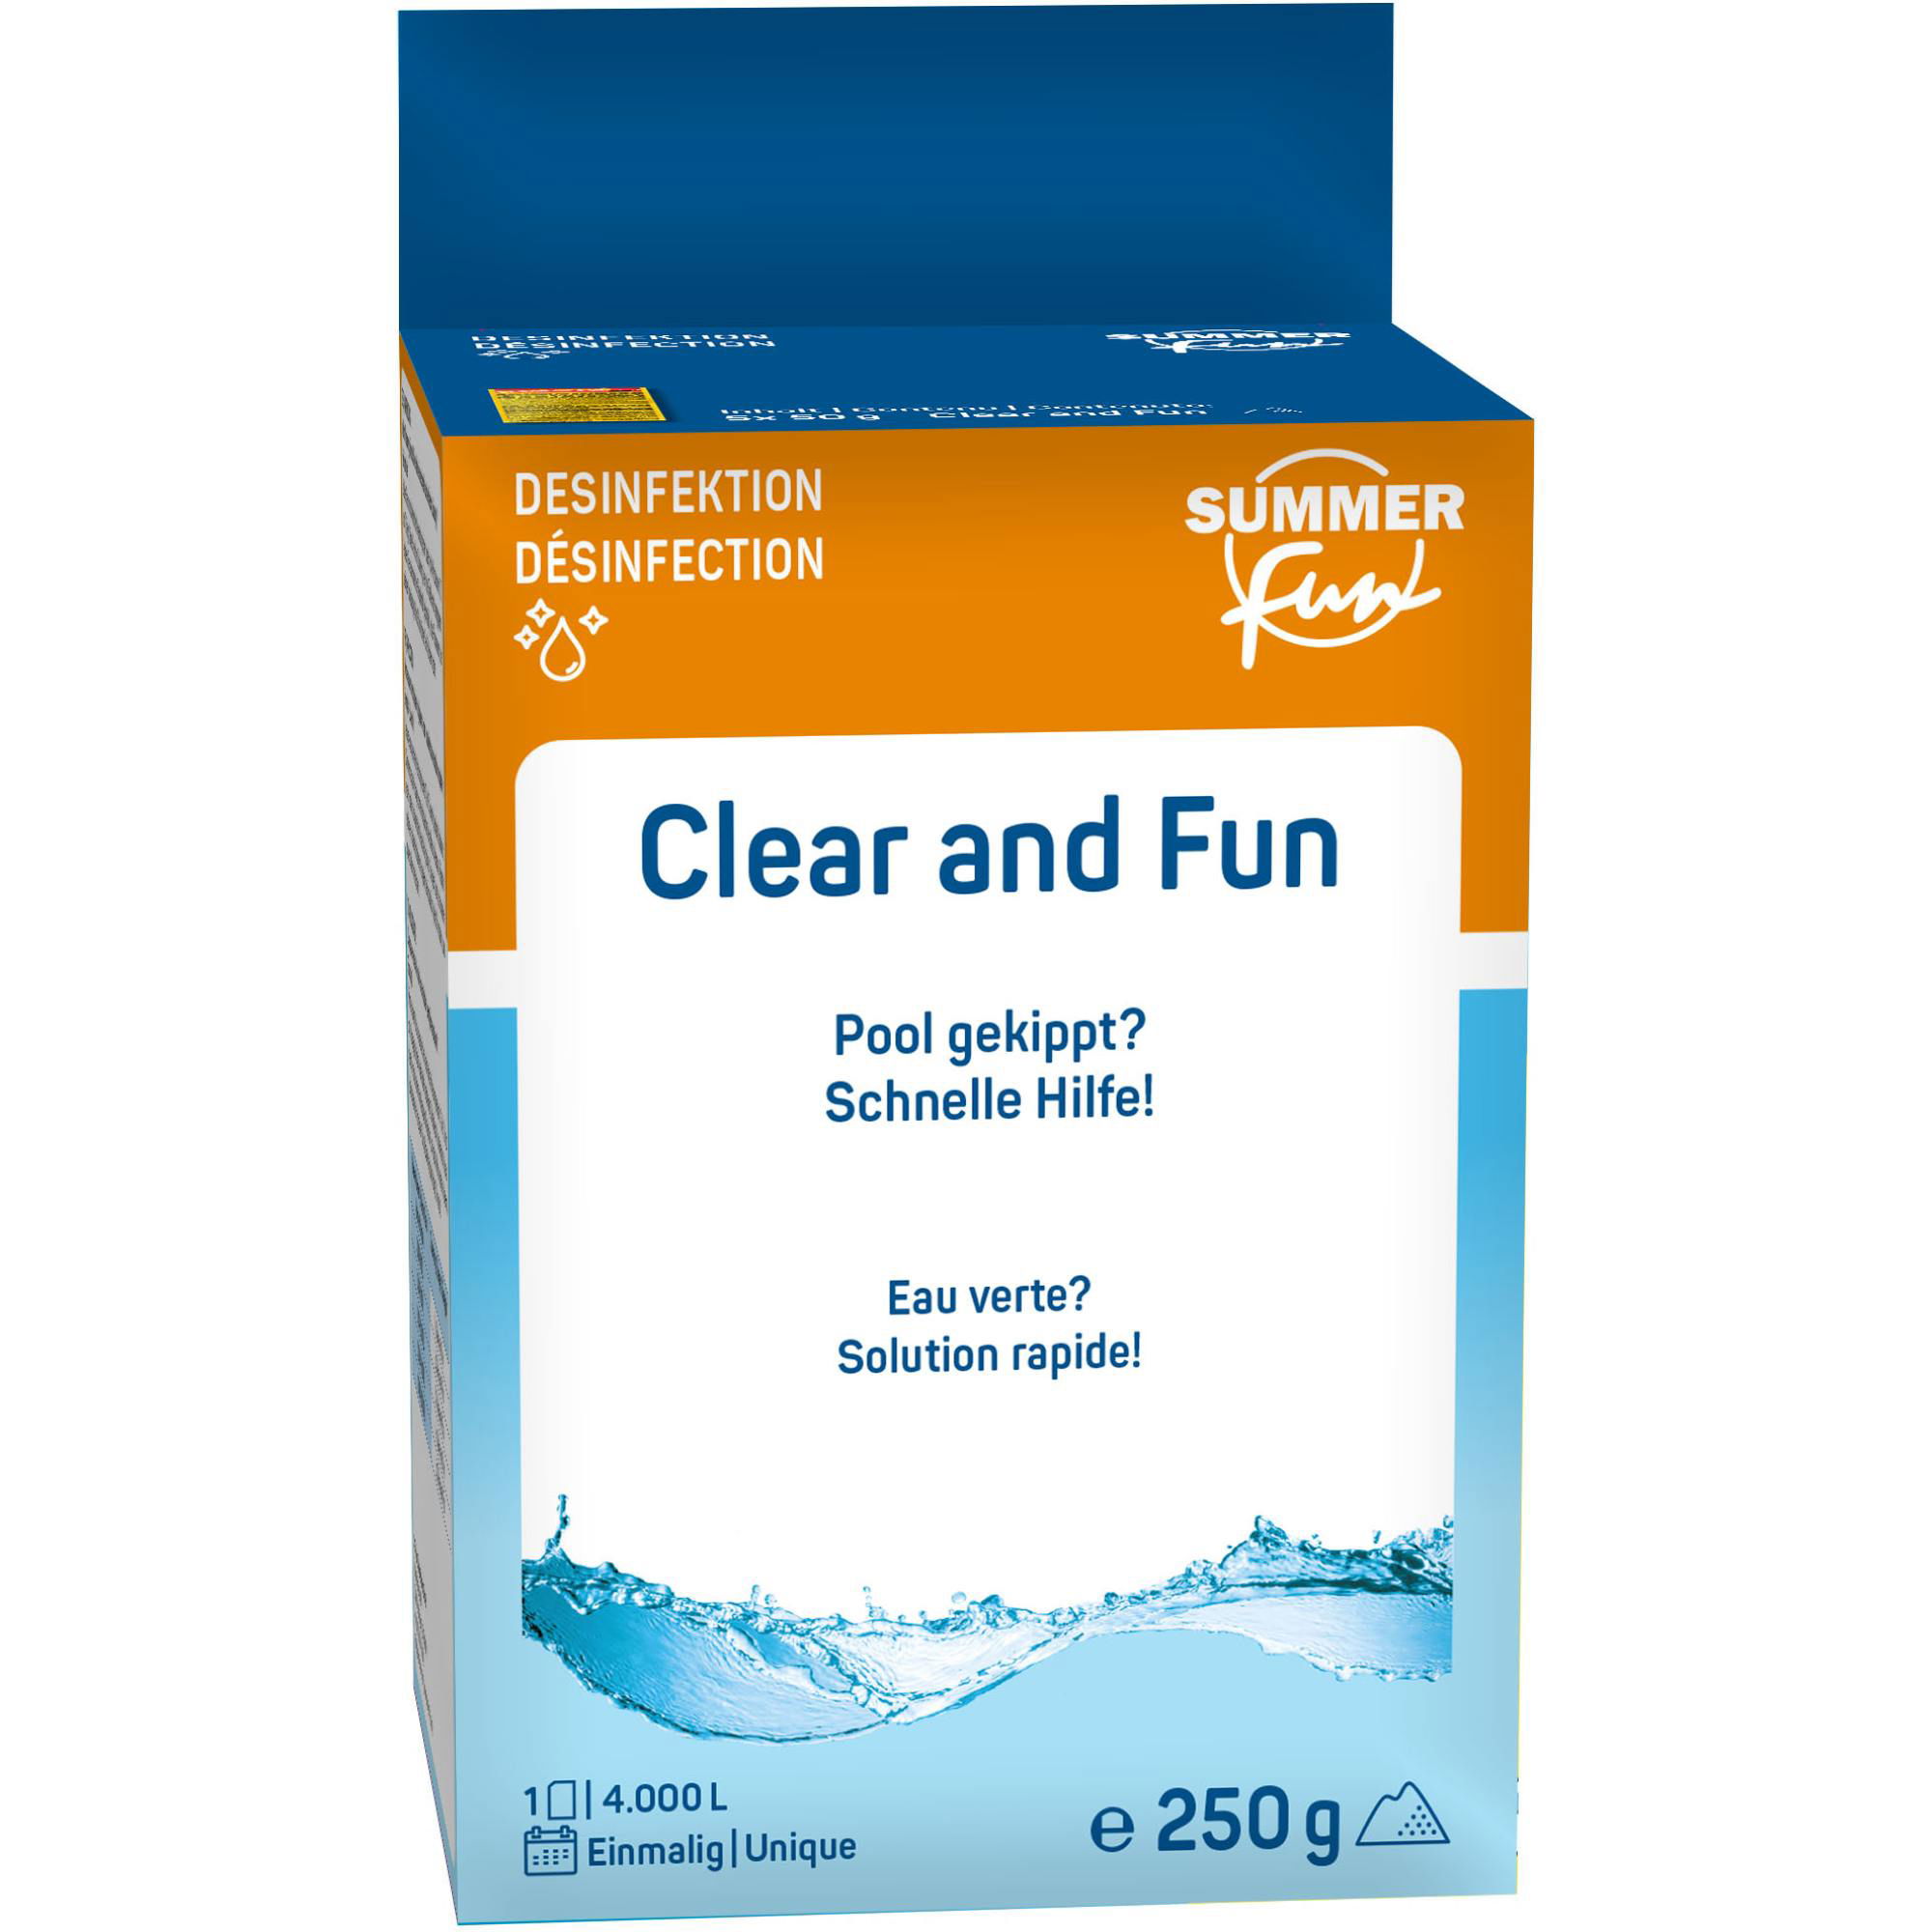 Summer Fun Clear and Fun (5x50 g) - 250 g